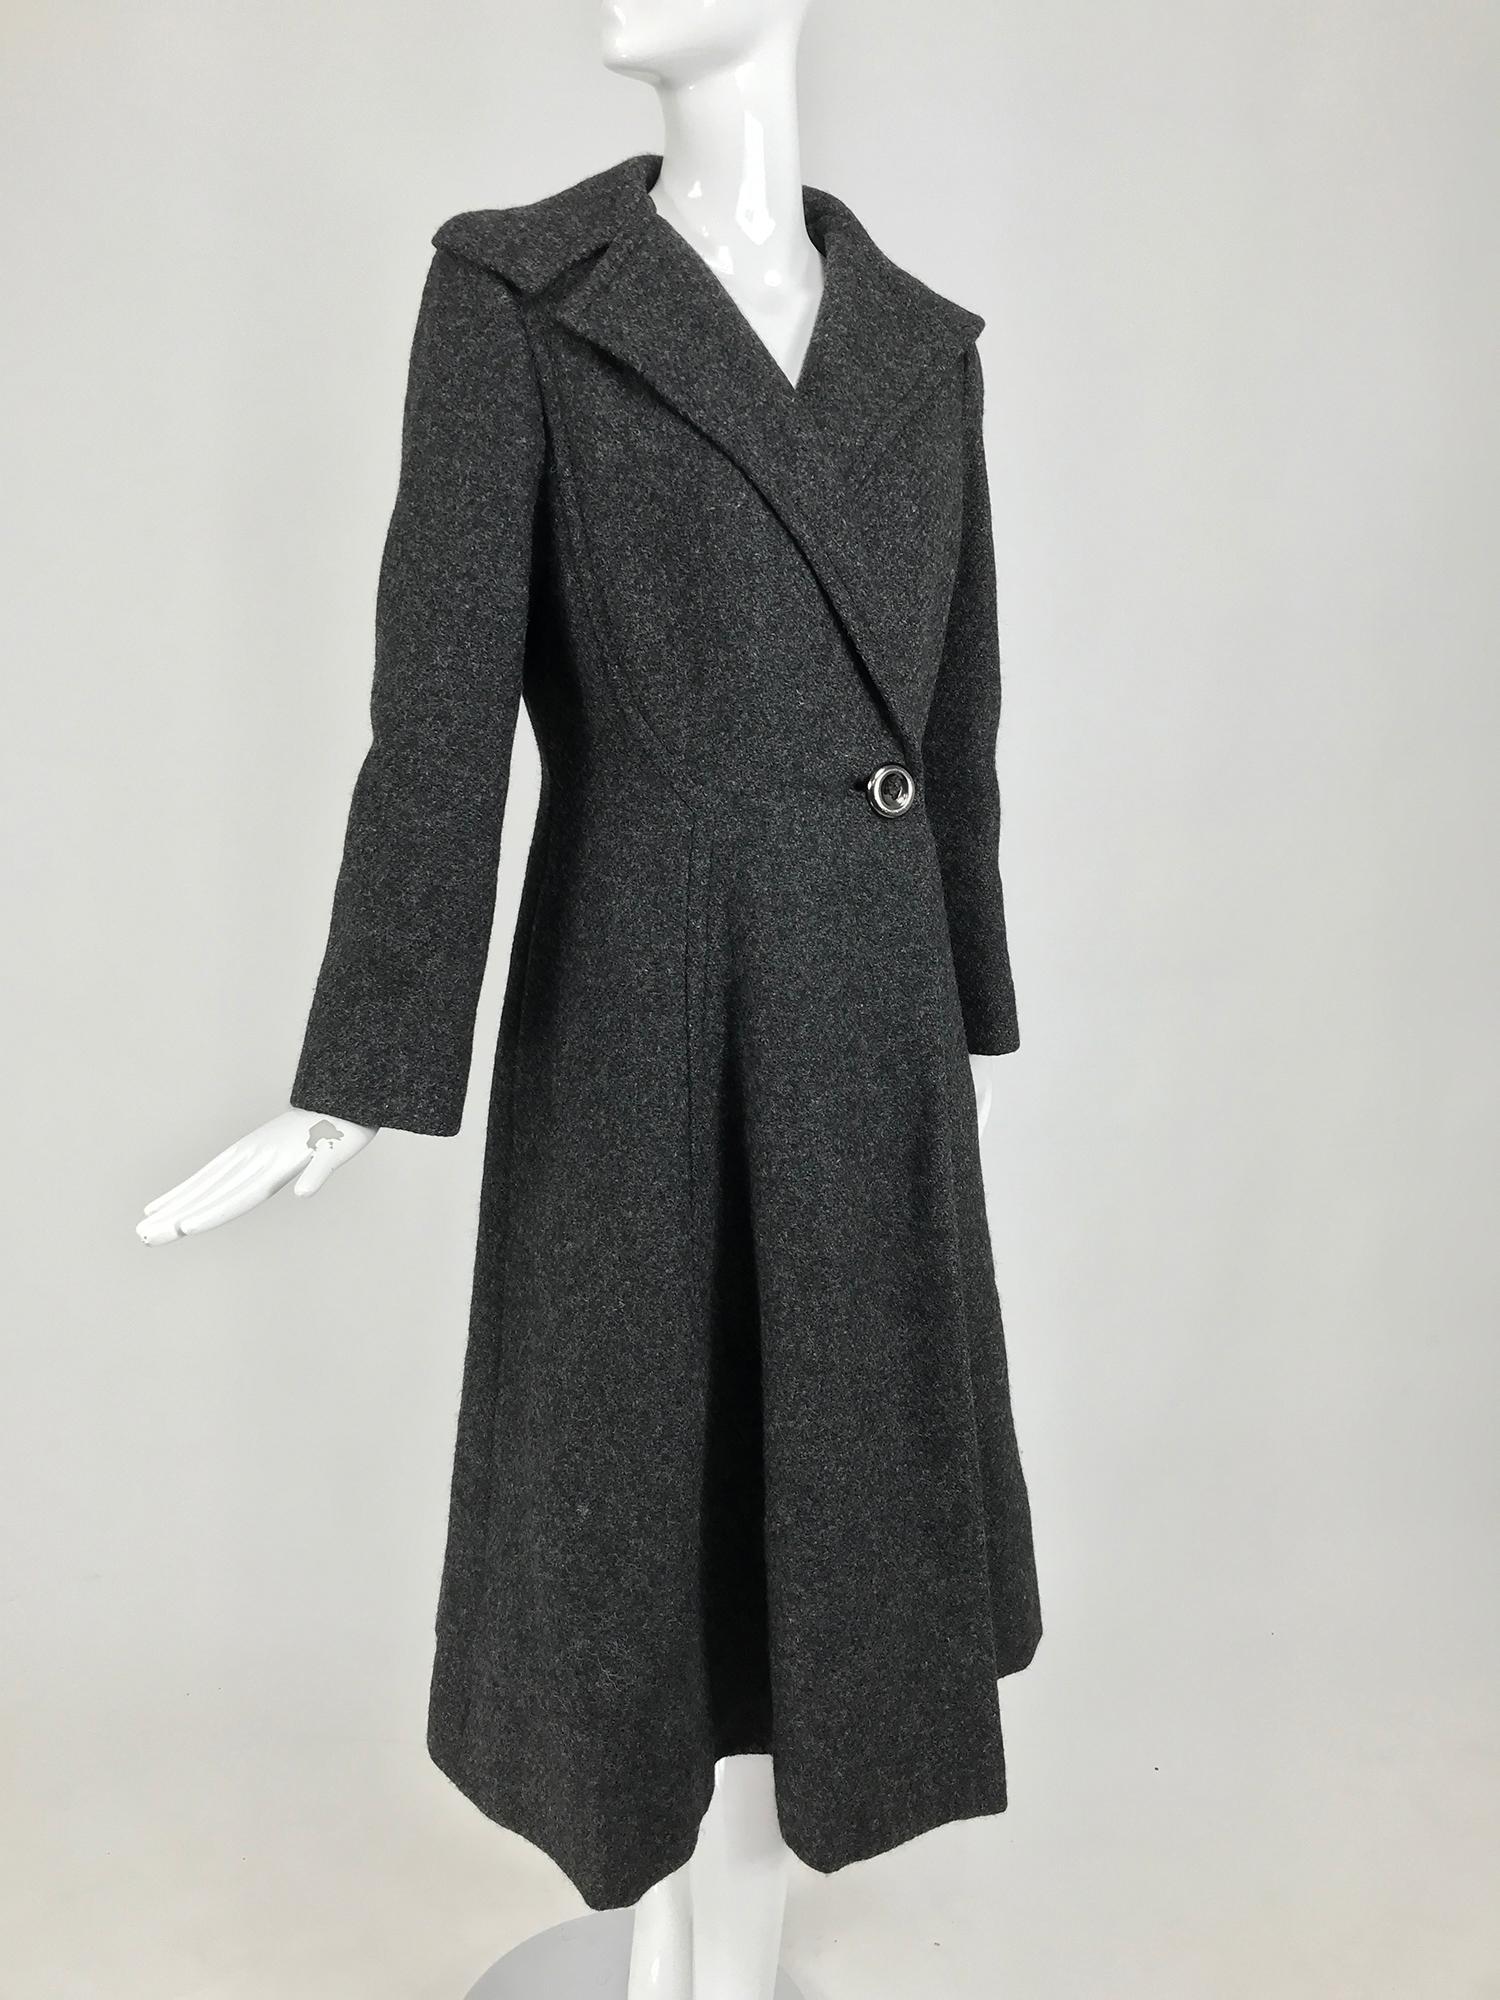 Manteau de princesse en laine gris moucheté Pauline Trigere des années 1950. Manteau en laine mouchetée gris anthracite foncé à larges revers formés se ferme à la taille par un seul bouton en métal argenté. Le manteau est ajusté à la taille, la jupe